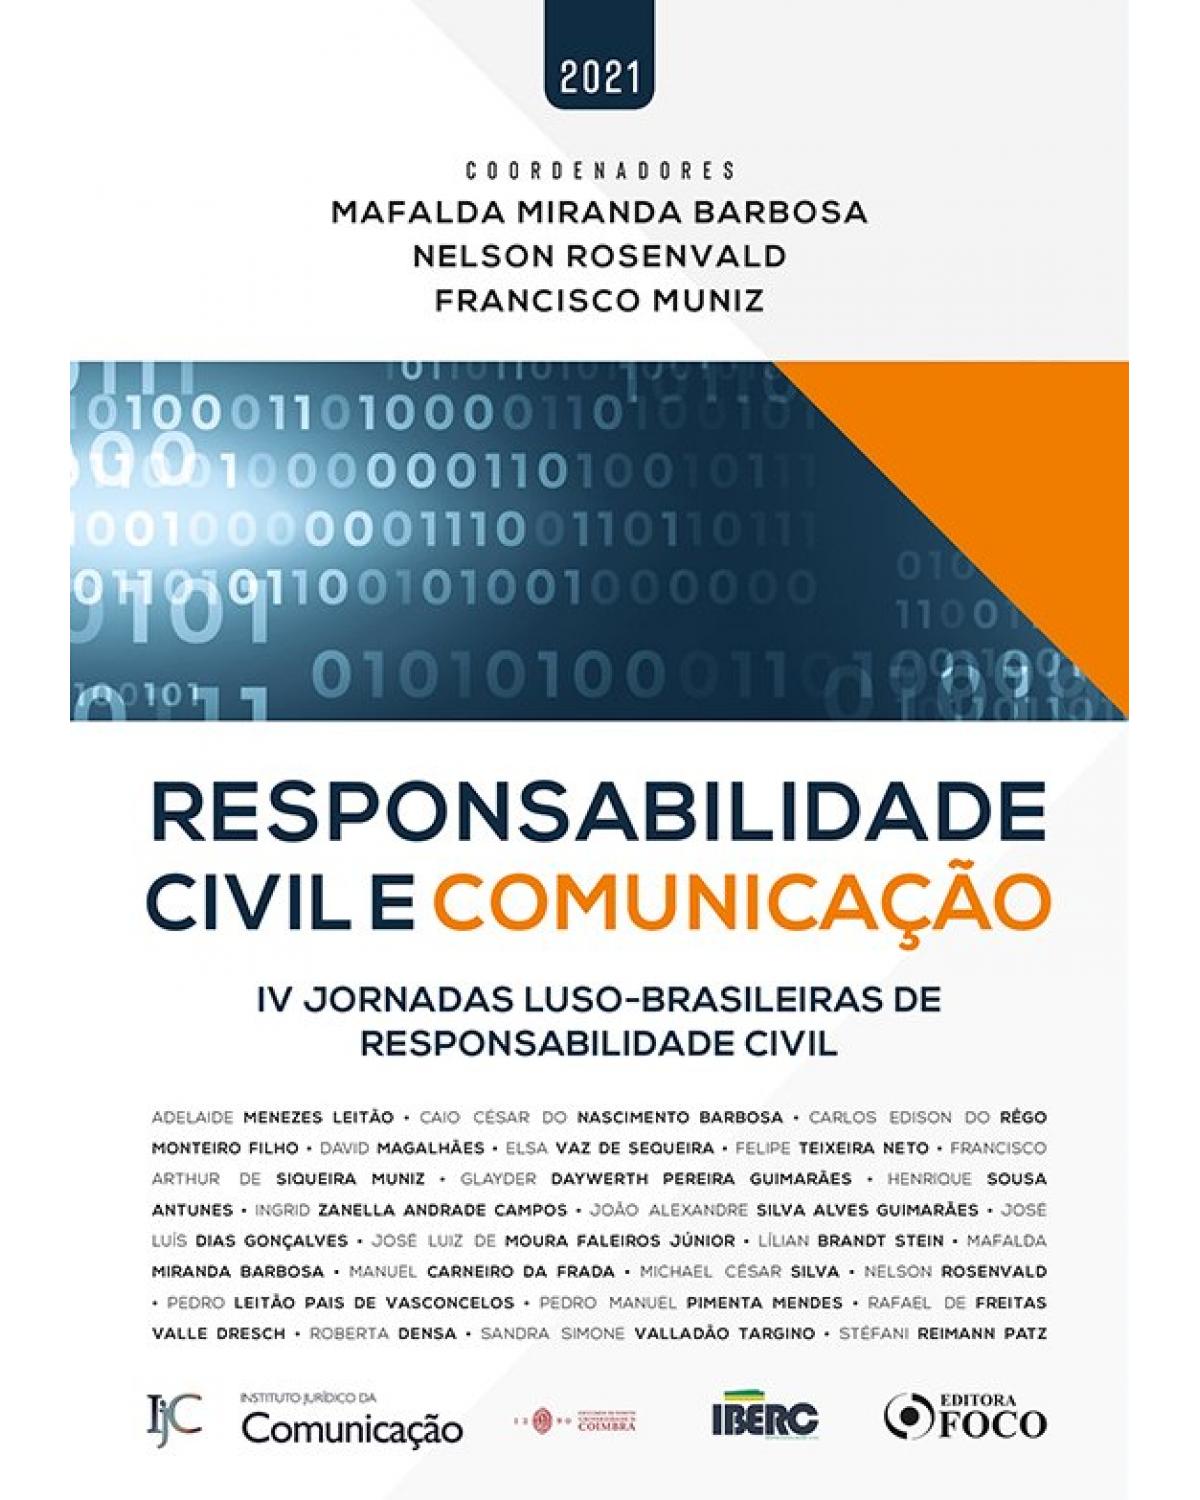 Responsabilidade civil e comunicação - IV Jornadas Luso-brasileiras de Responsabilidade Civil - 1ª Edição | 2021